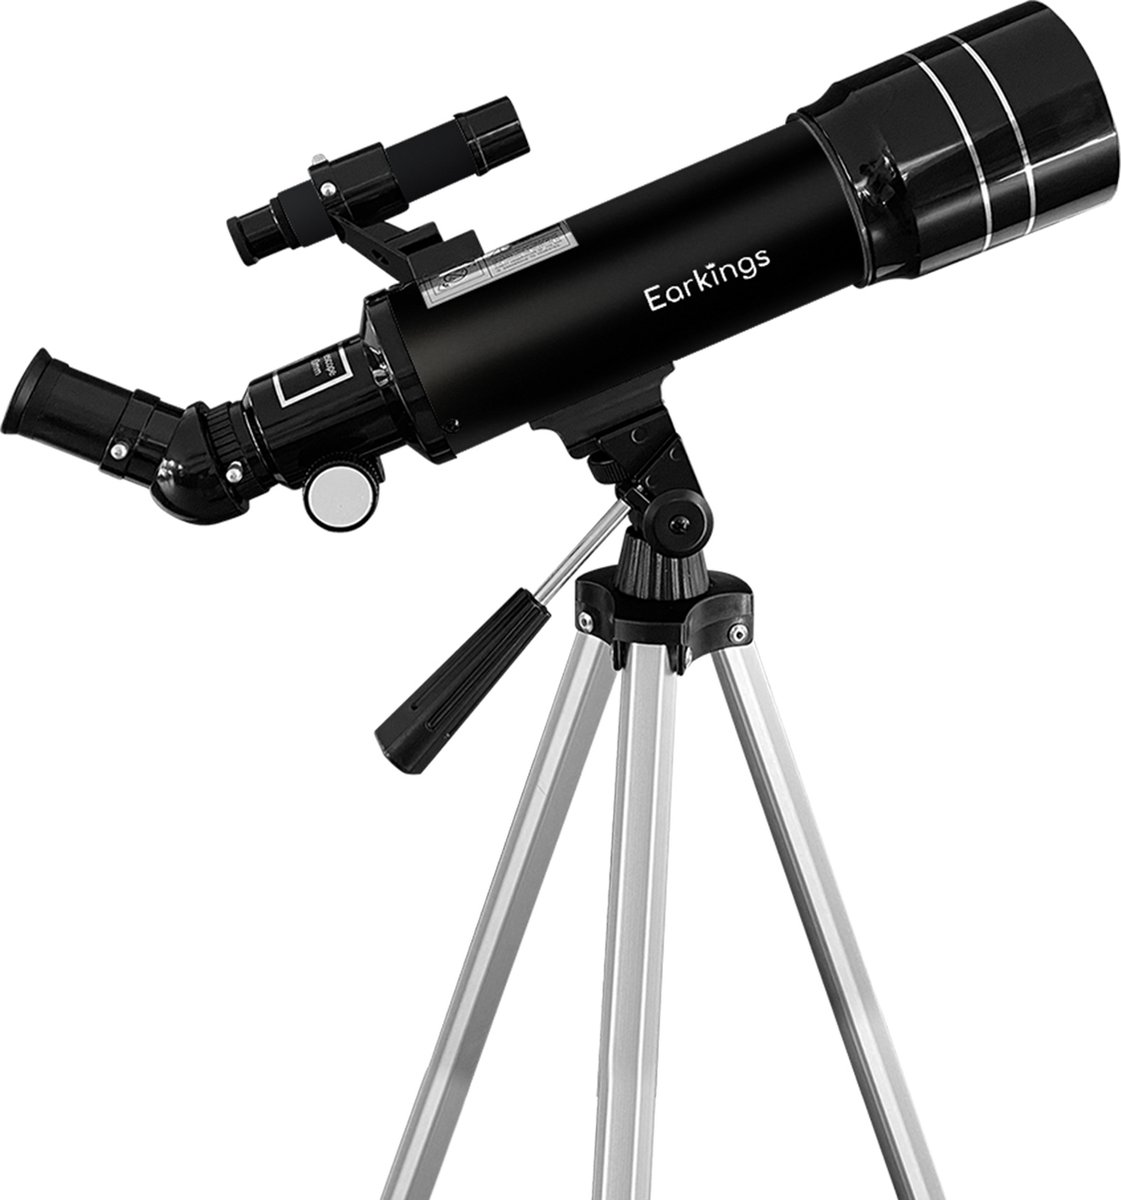 Earkings Telescoop Sterrenkijker 70/400 mm voor Kinderen, Beginners en Gevorderden - Inclusief Statief, Opbergtas, Twee Lenzen 25mm & 10mm en Barlow Lens, Telefoon Houder voor Foto’s - f/5.7 Magnificatie zwart - EarKings